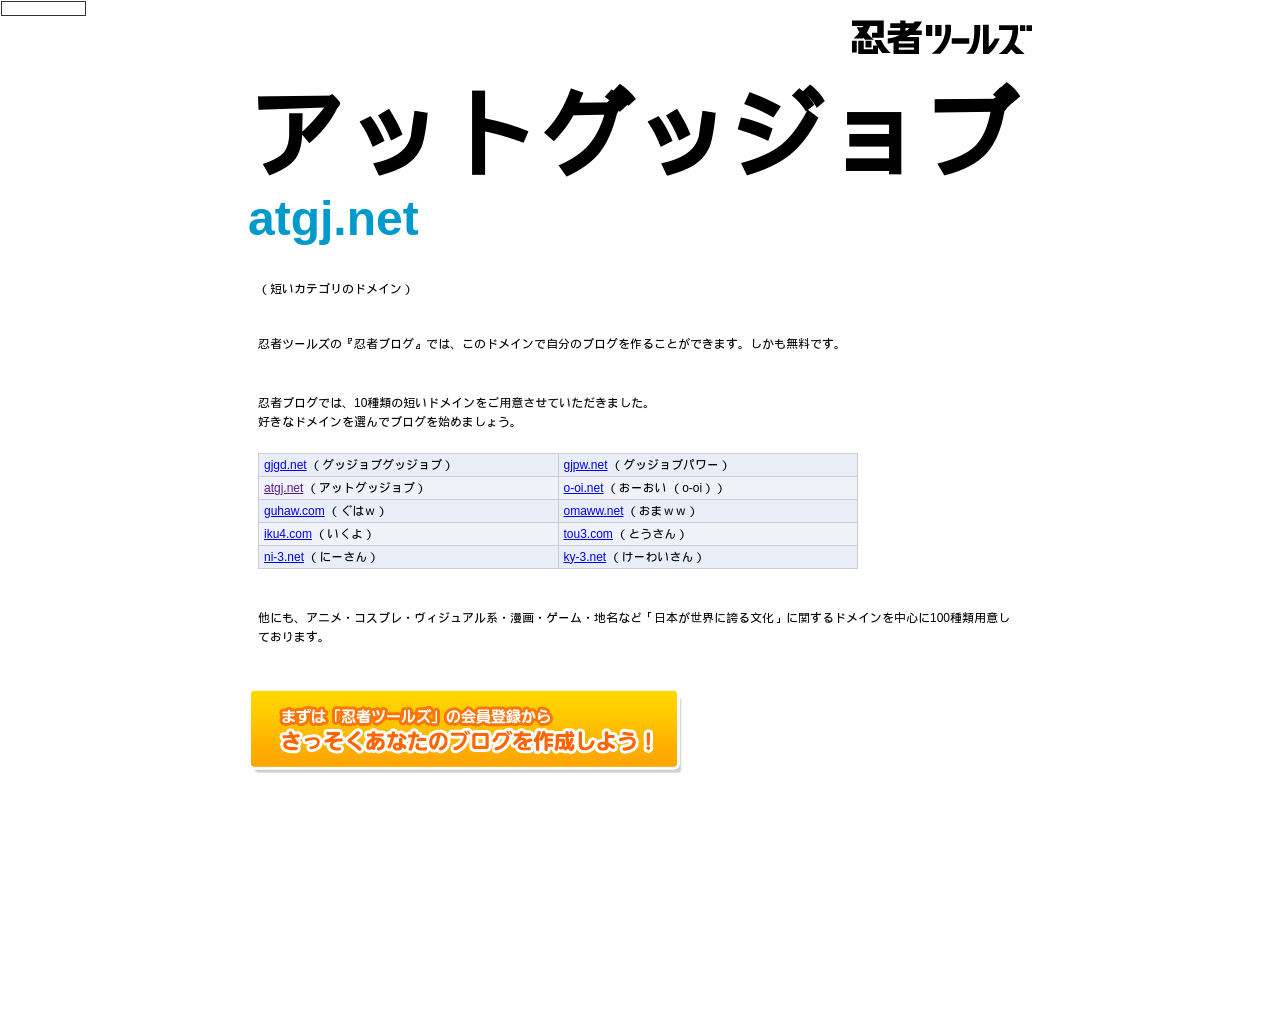 atgj.net